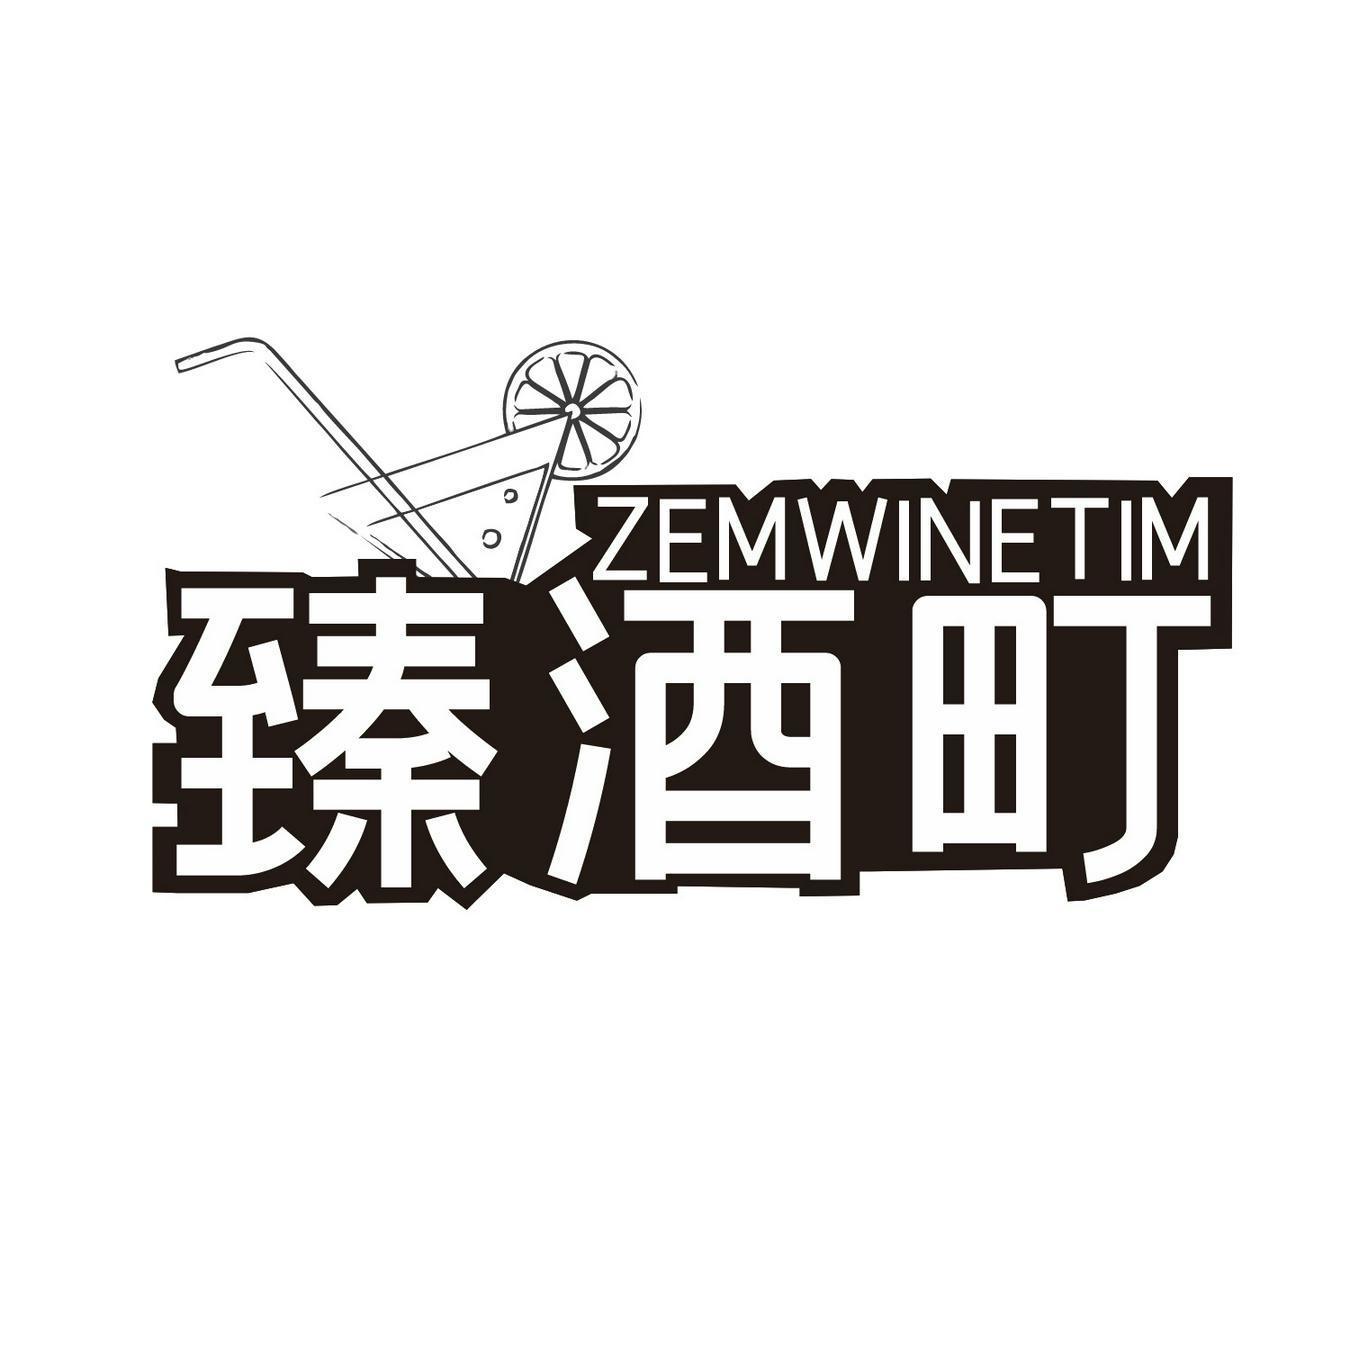 臻酒町 ZEMWINETIM